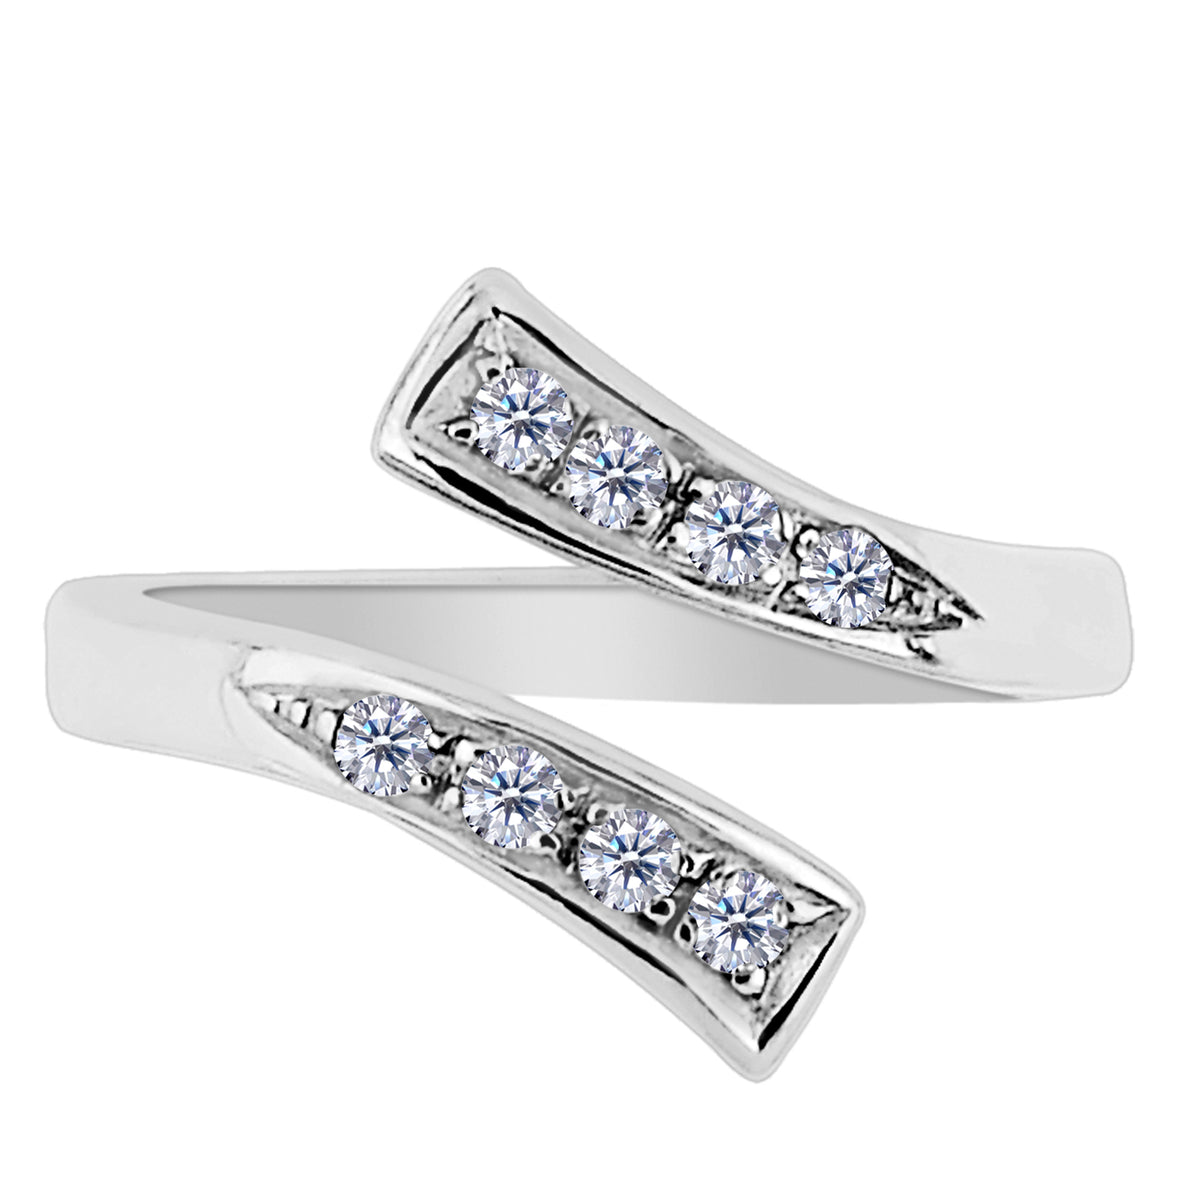 Extremos divididos de plata esterlina con anillo de dedo del pie ajustable estilo CZ By Pass, joyería de diseño fino para hombres y mujeres